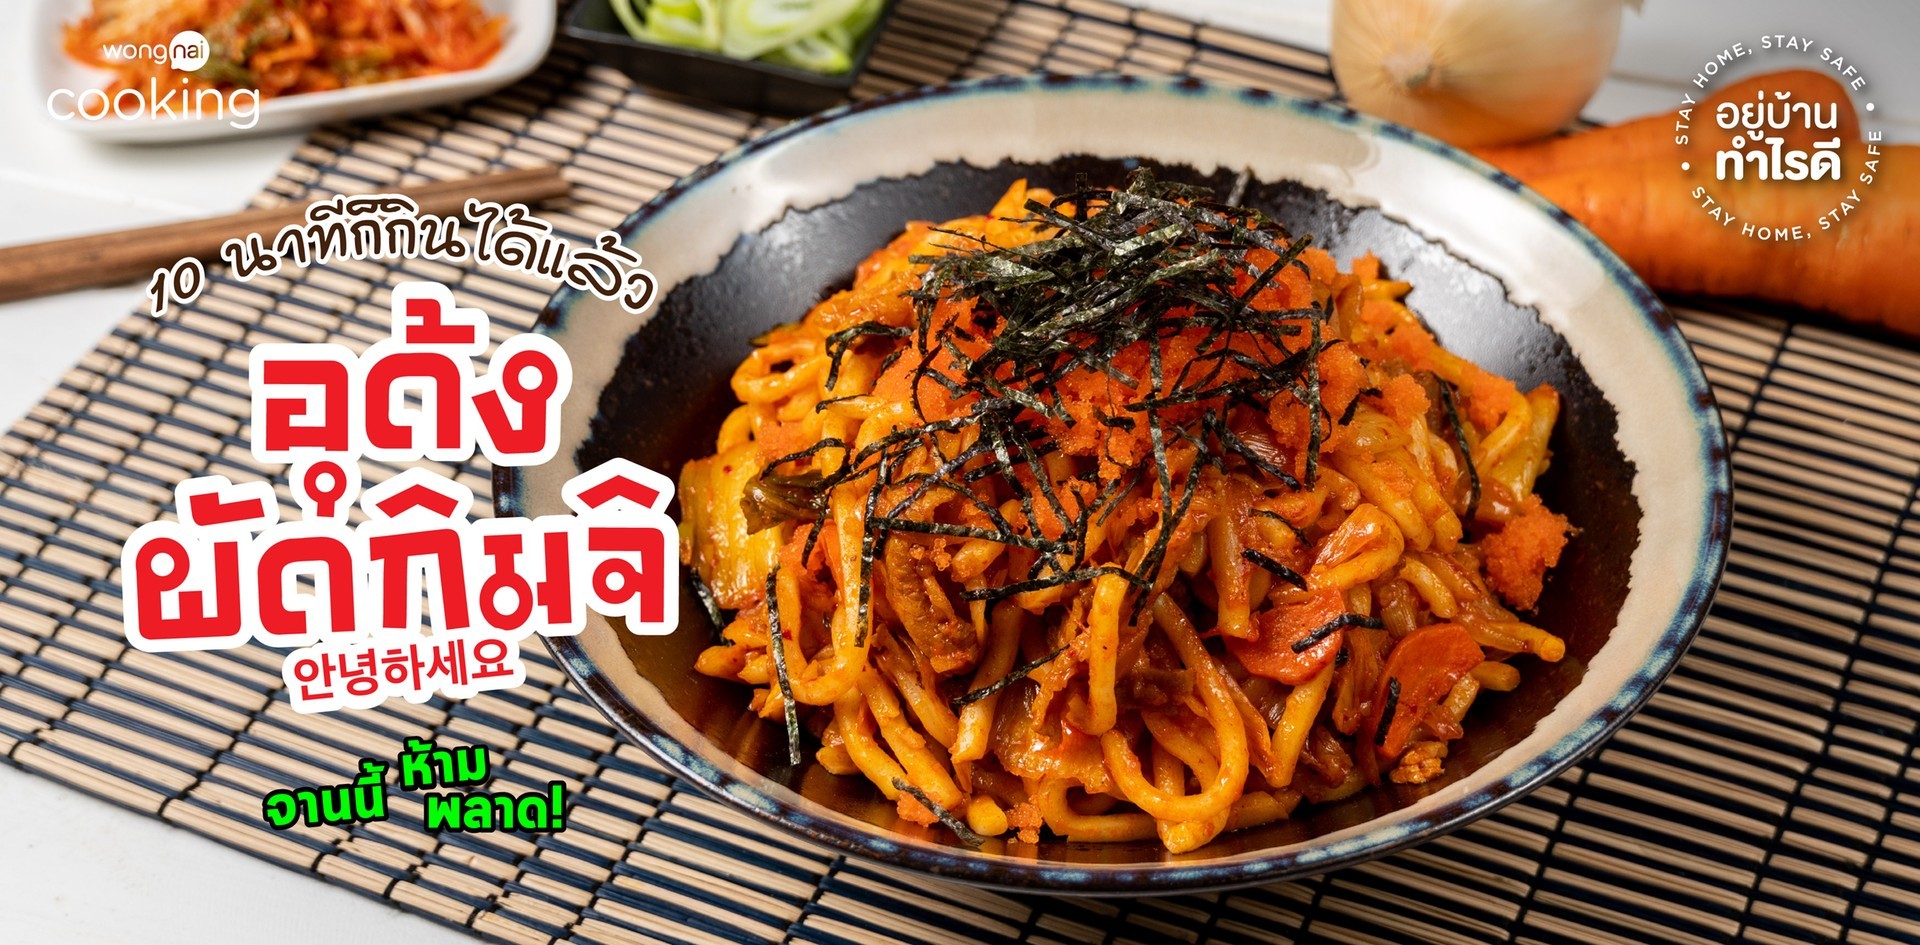 วิธีทำ “อุด้งผัดกิมจิ” เมนูอาหารเกาหลี จานนี้ห้ามพลาด!